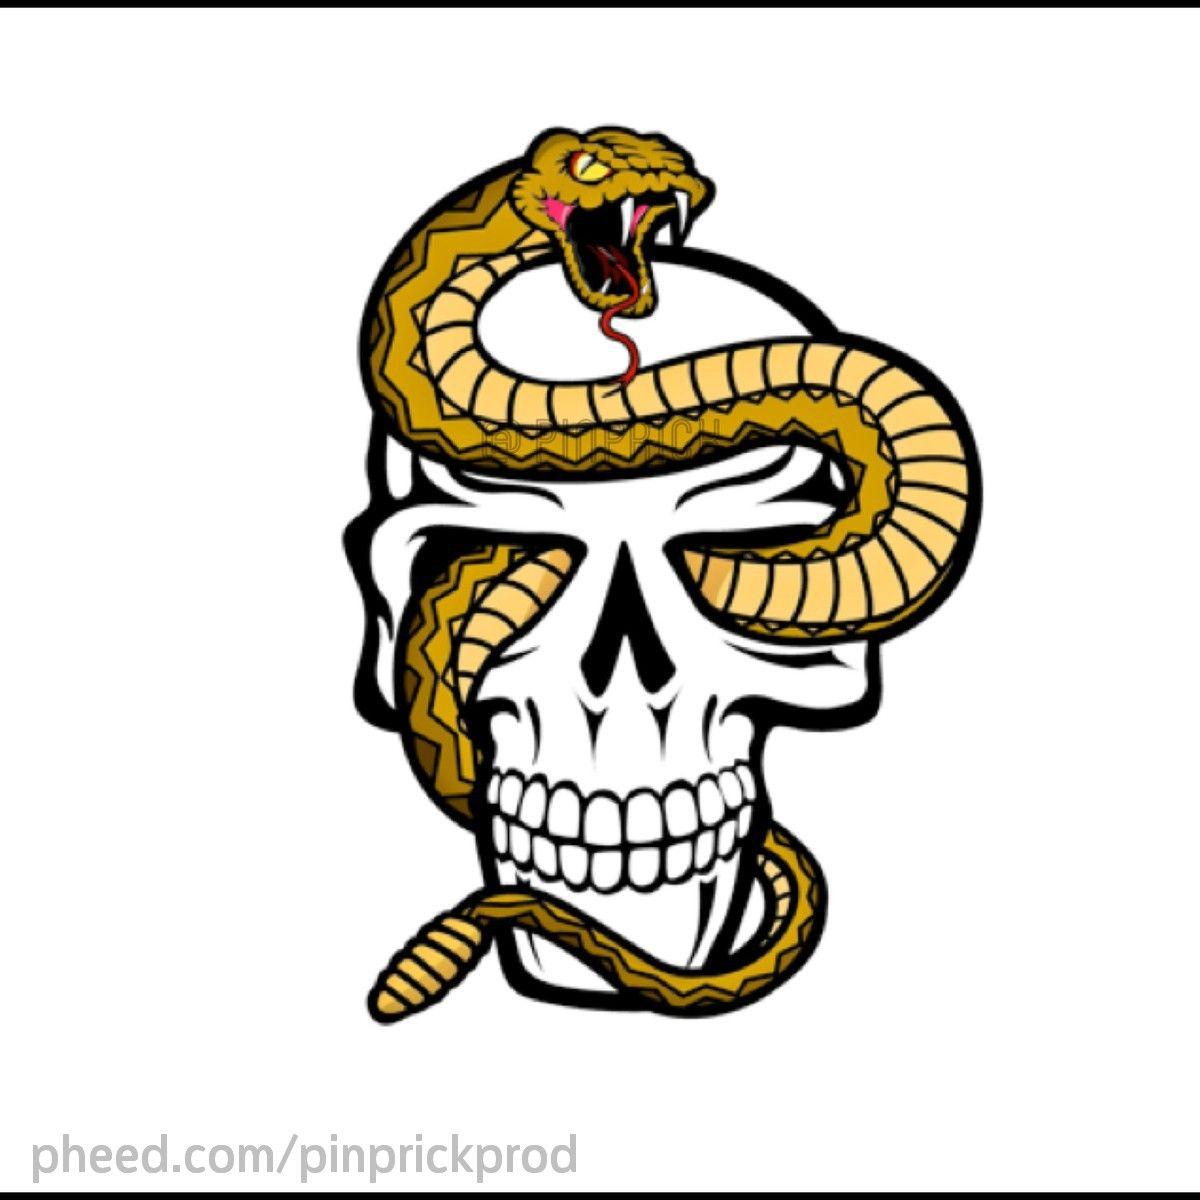 Rattlesnake Logo - image For Rattlesnake Head Logo